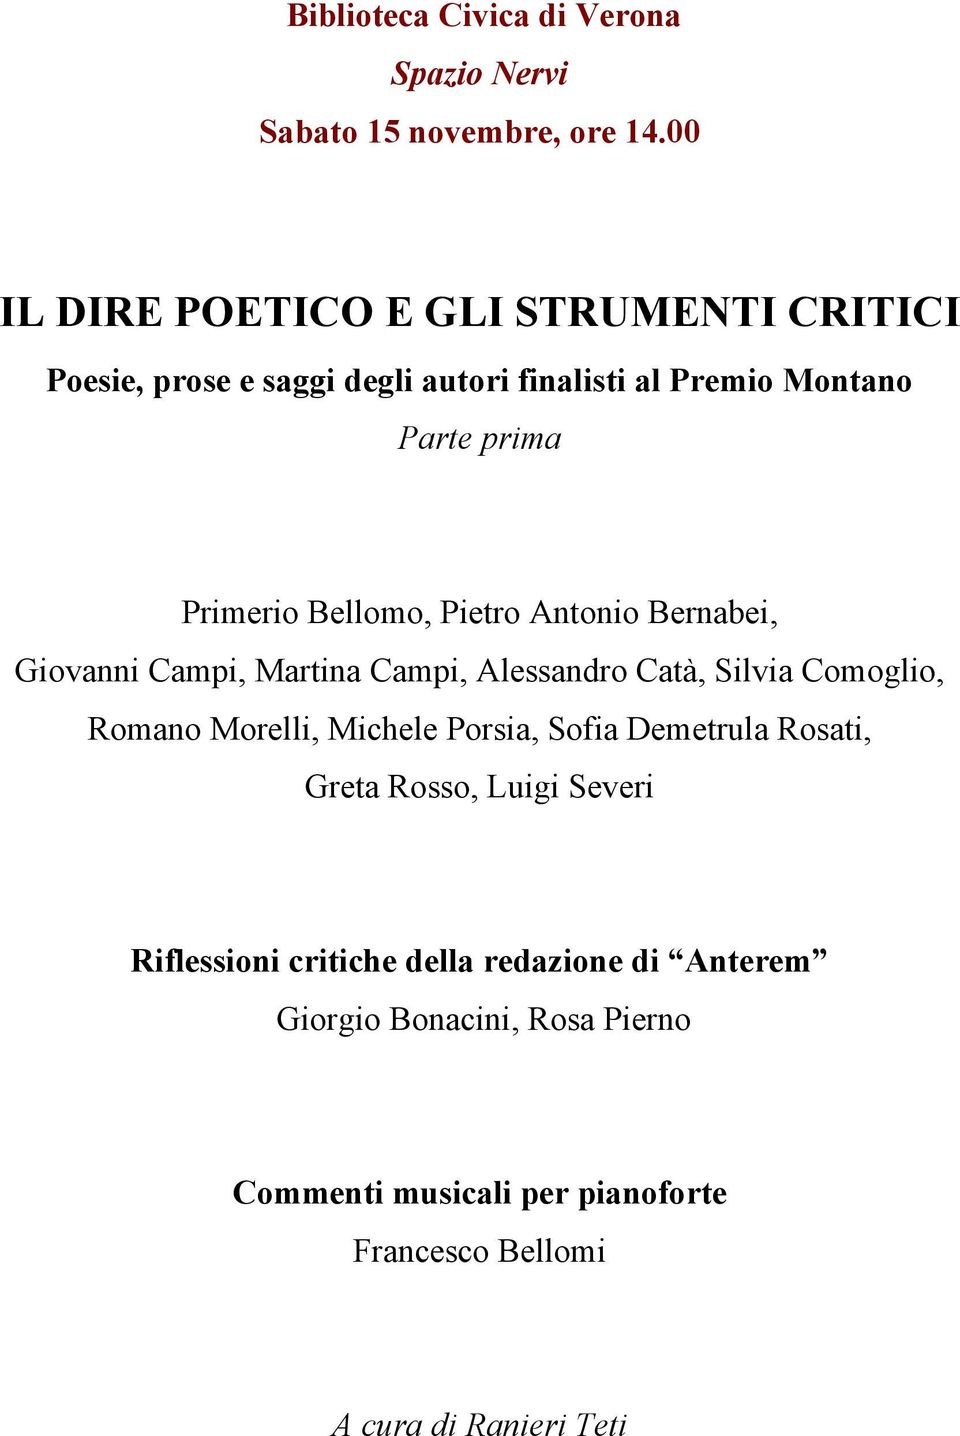 Primerio Bellomo, Pietro Antonio Bernabei, Giovanni Campi, Martina Campi, Alessandro Catà, Silvia Comoglio, Romano